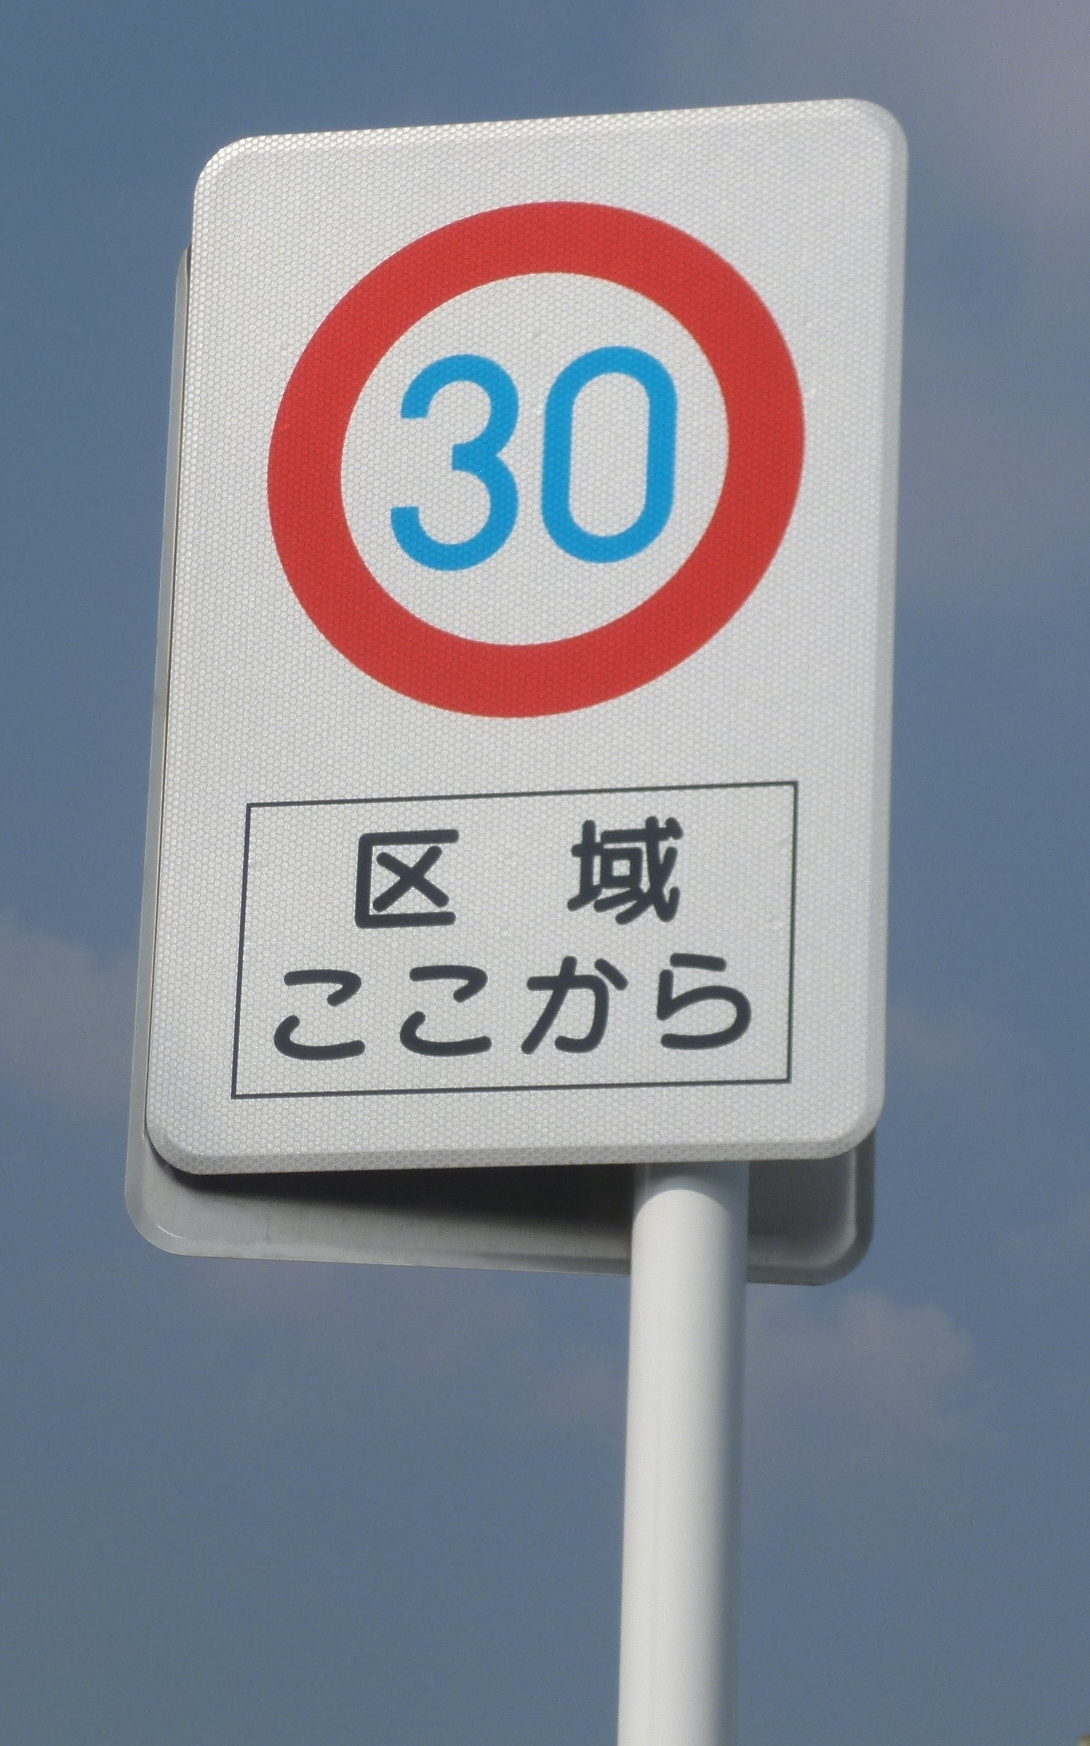 ゾーン30の標識